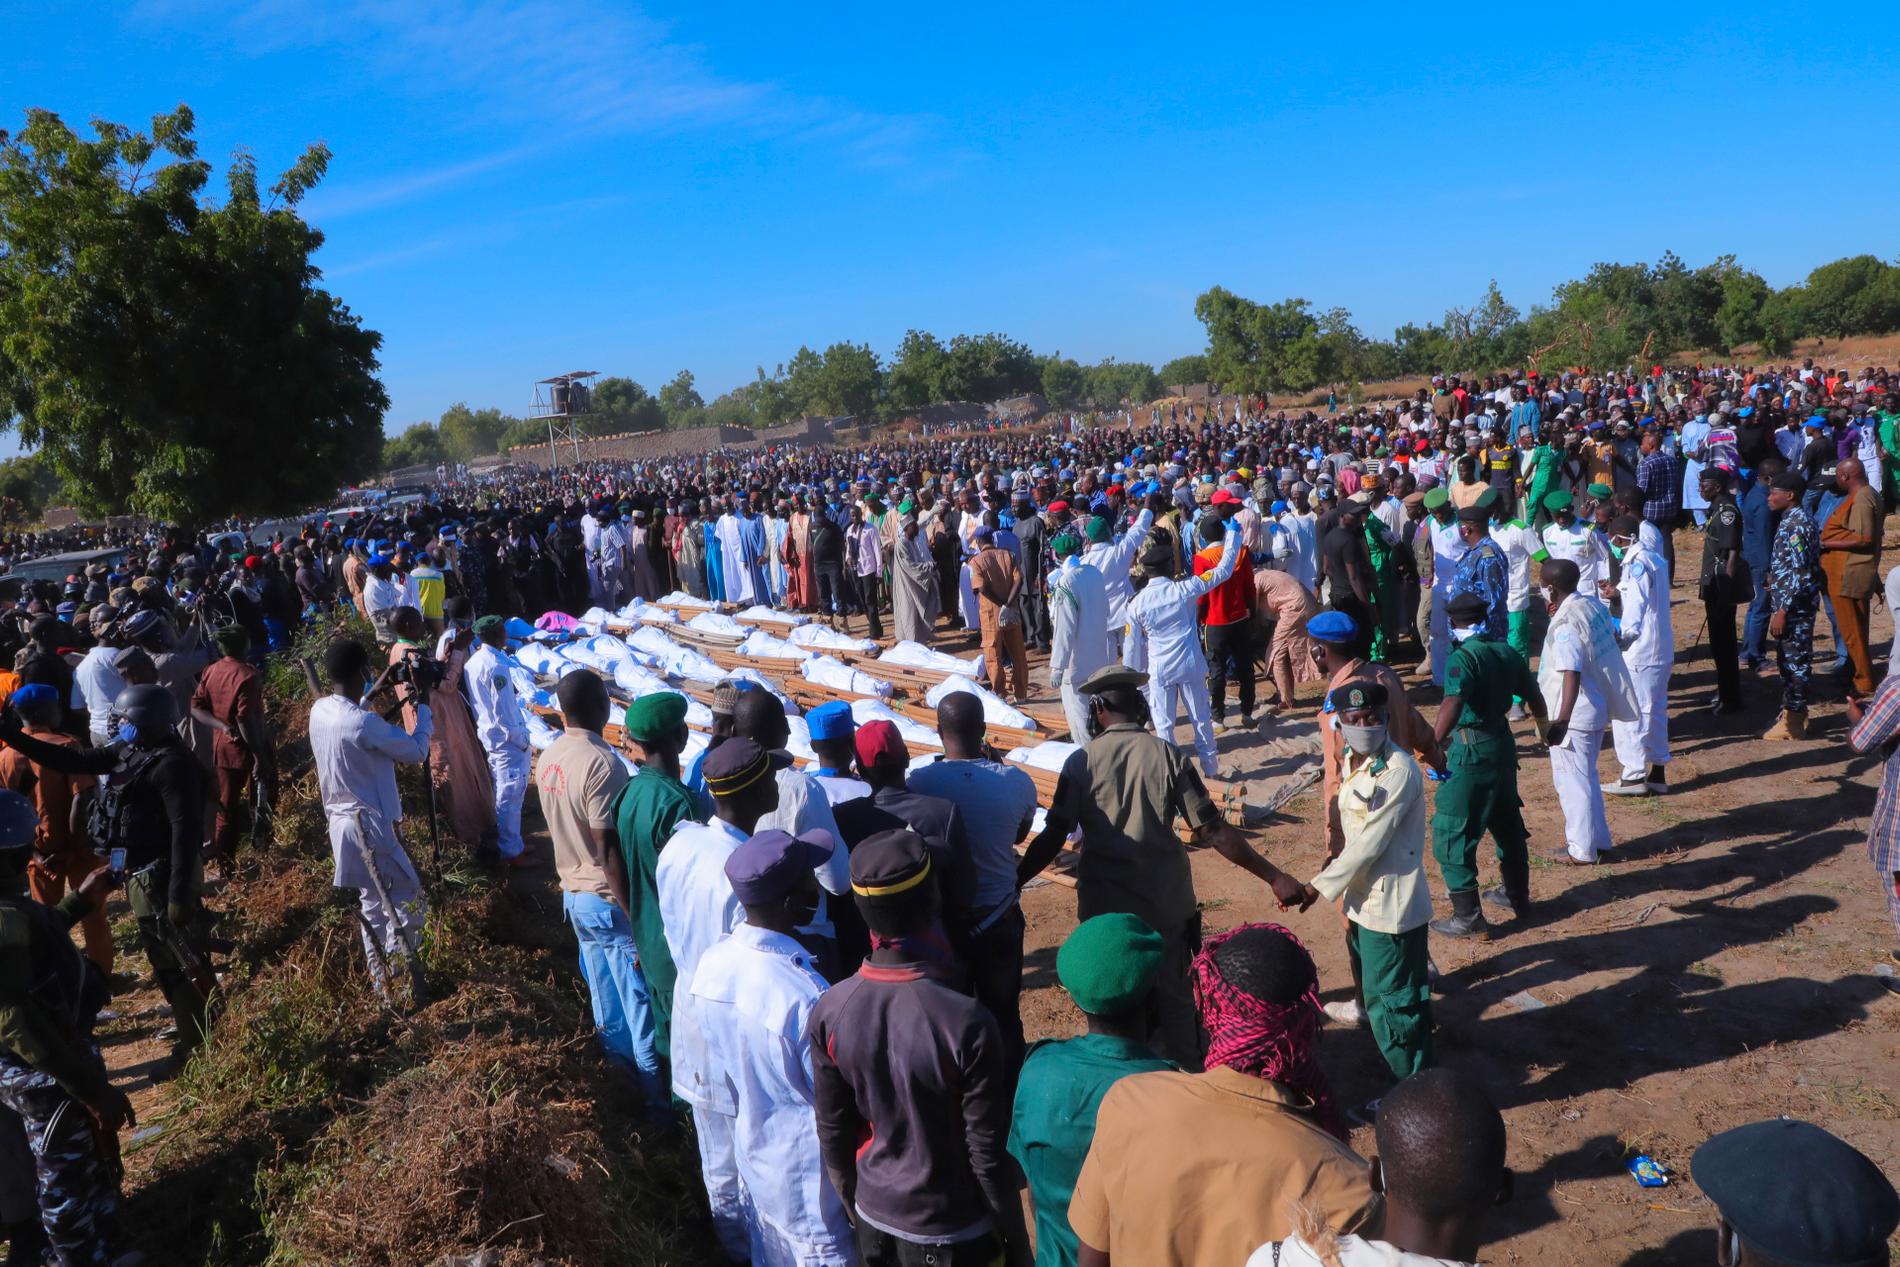 Massbegravning av flera av offren för den misstänkta jihadistattack som ägde rum i Borno på lördagen. Enligt FN:s koordinator för humanitära frågor i Nigeria dödades minst 120 människor i attacken.